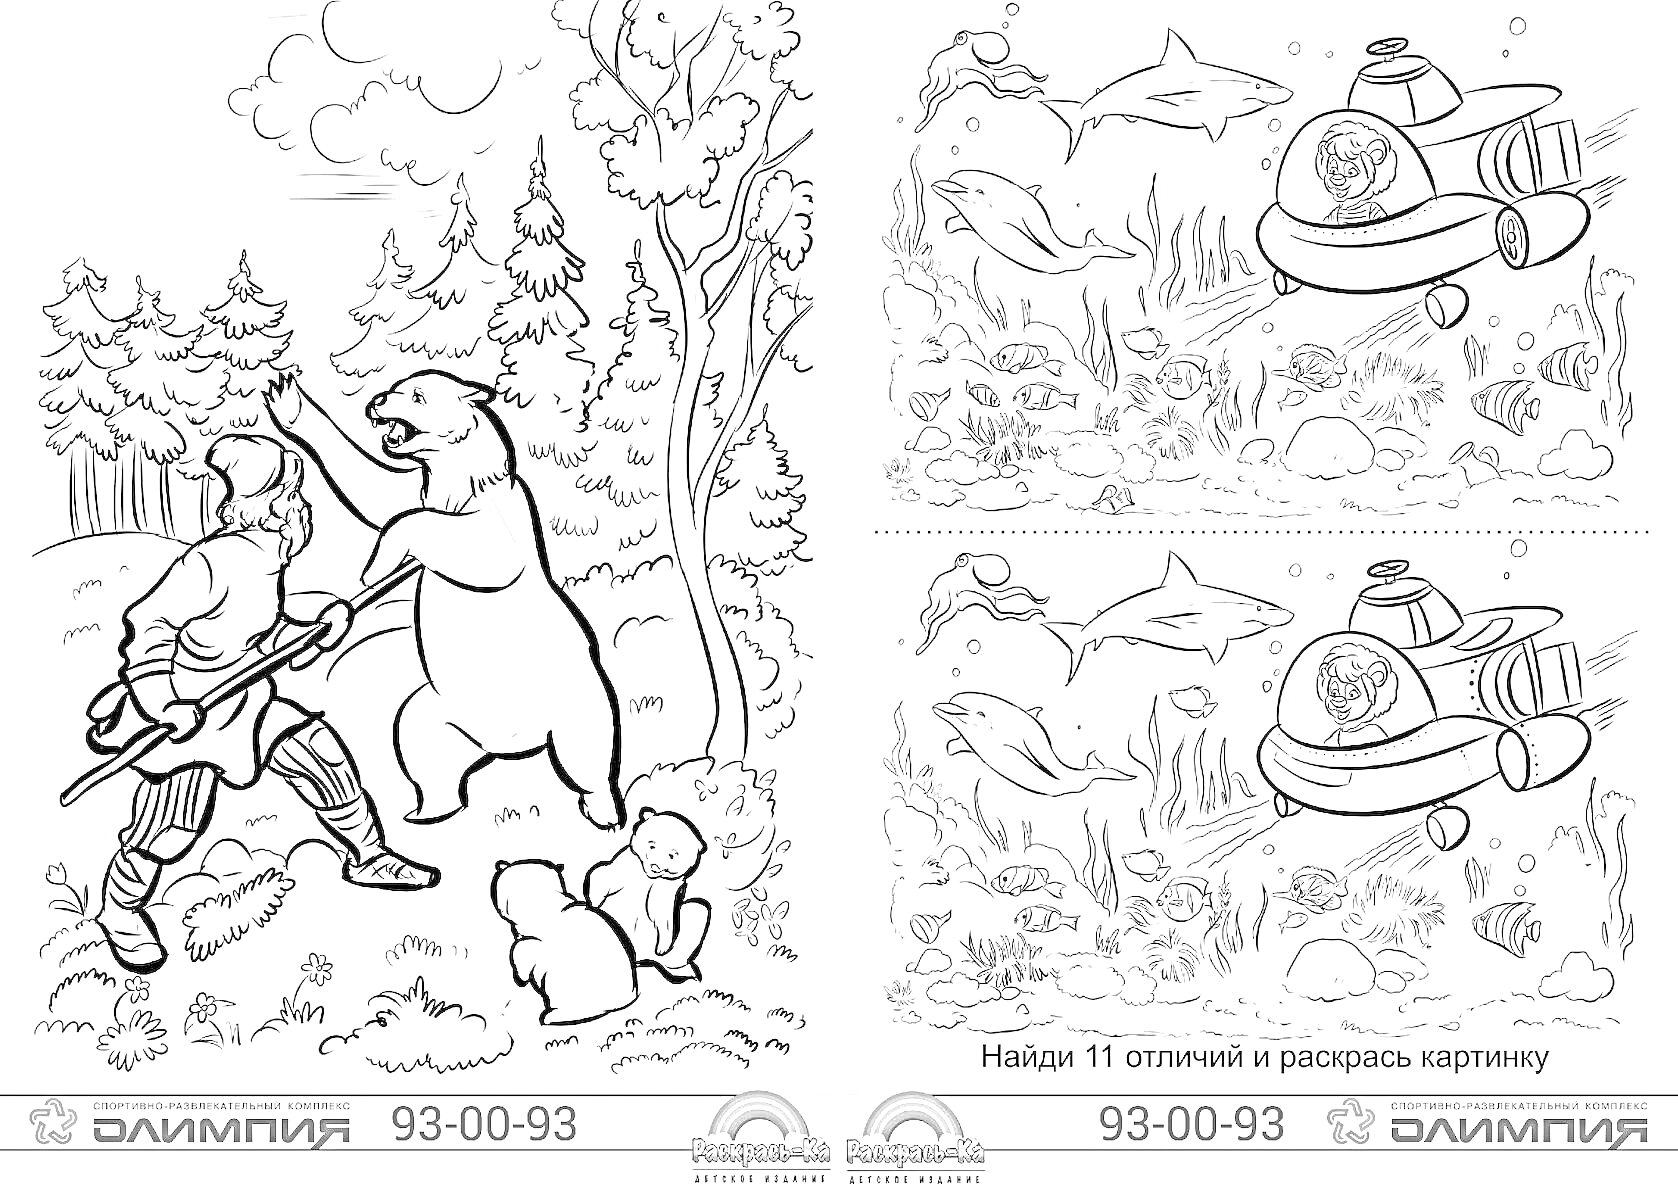 Раскраска Садко и медведь среди леса, сцена с подводным царством и подводной лодкой, задача на нахождение отличий (две картинки с морскими жителями)